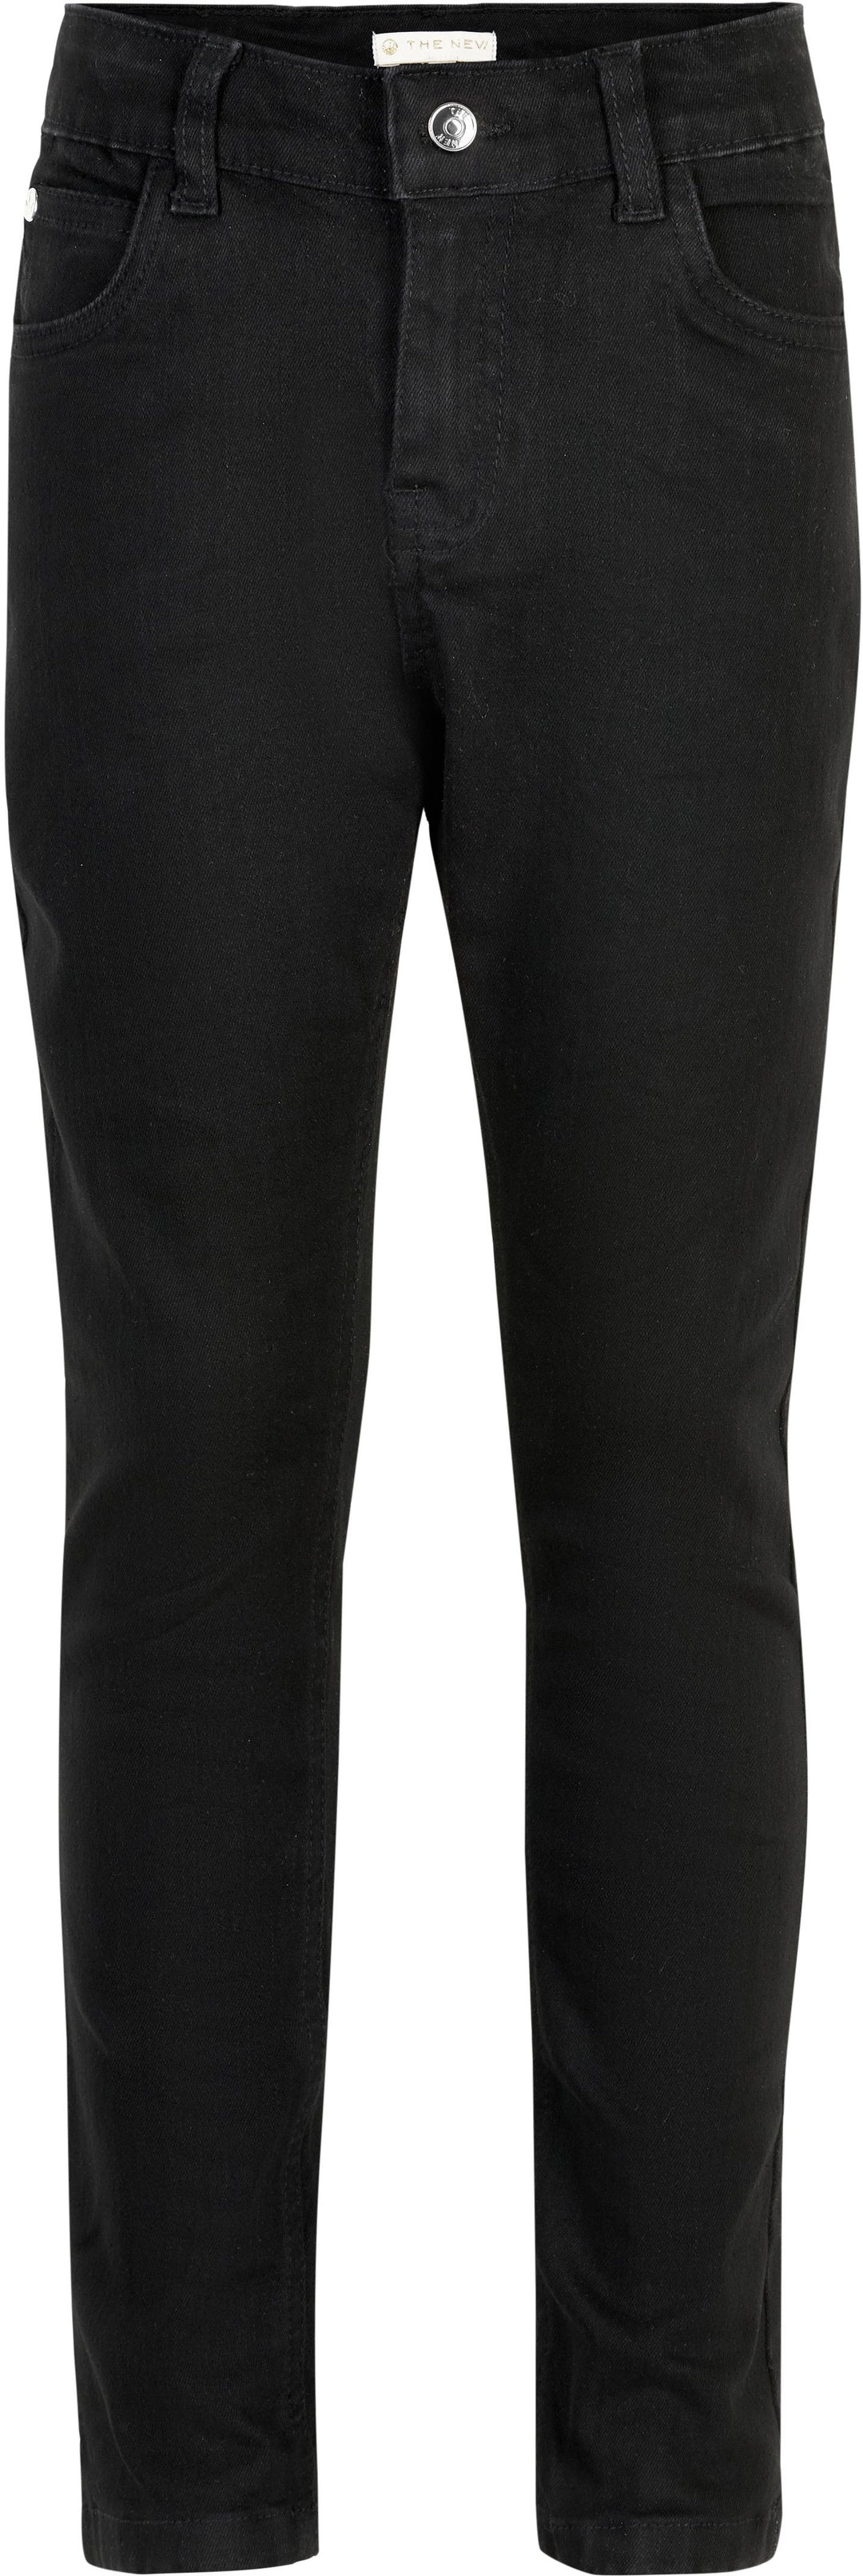 THE NEW - Copenhagen Slim Jeans - Black Bukser 